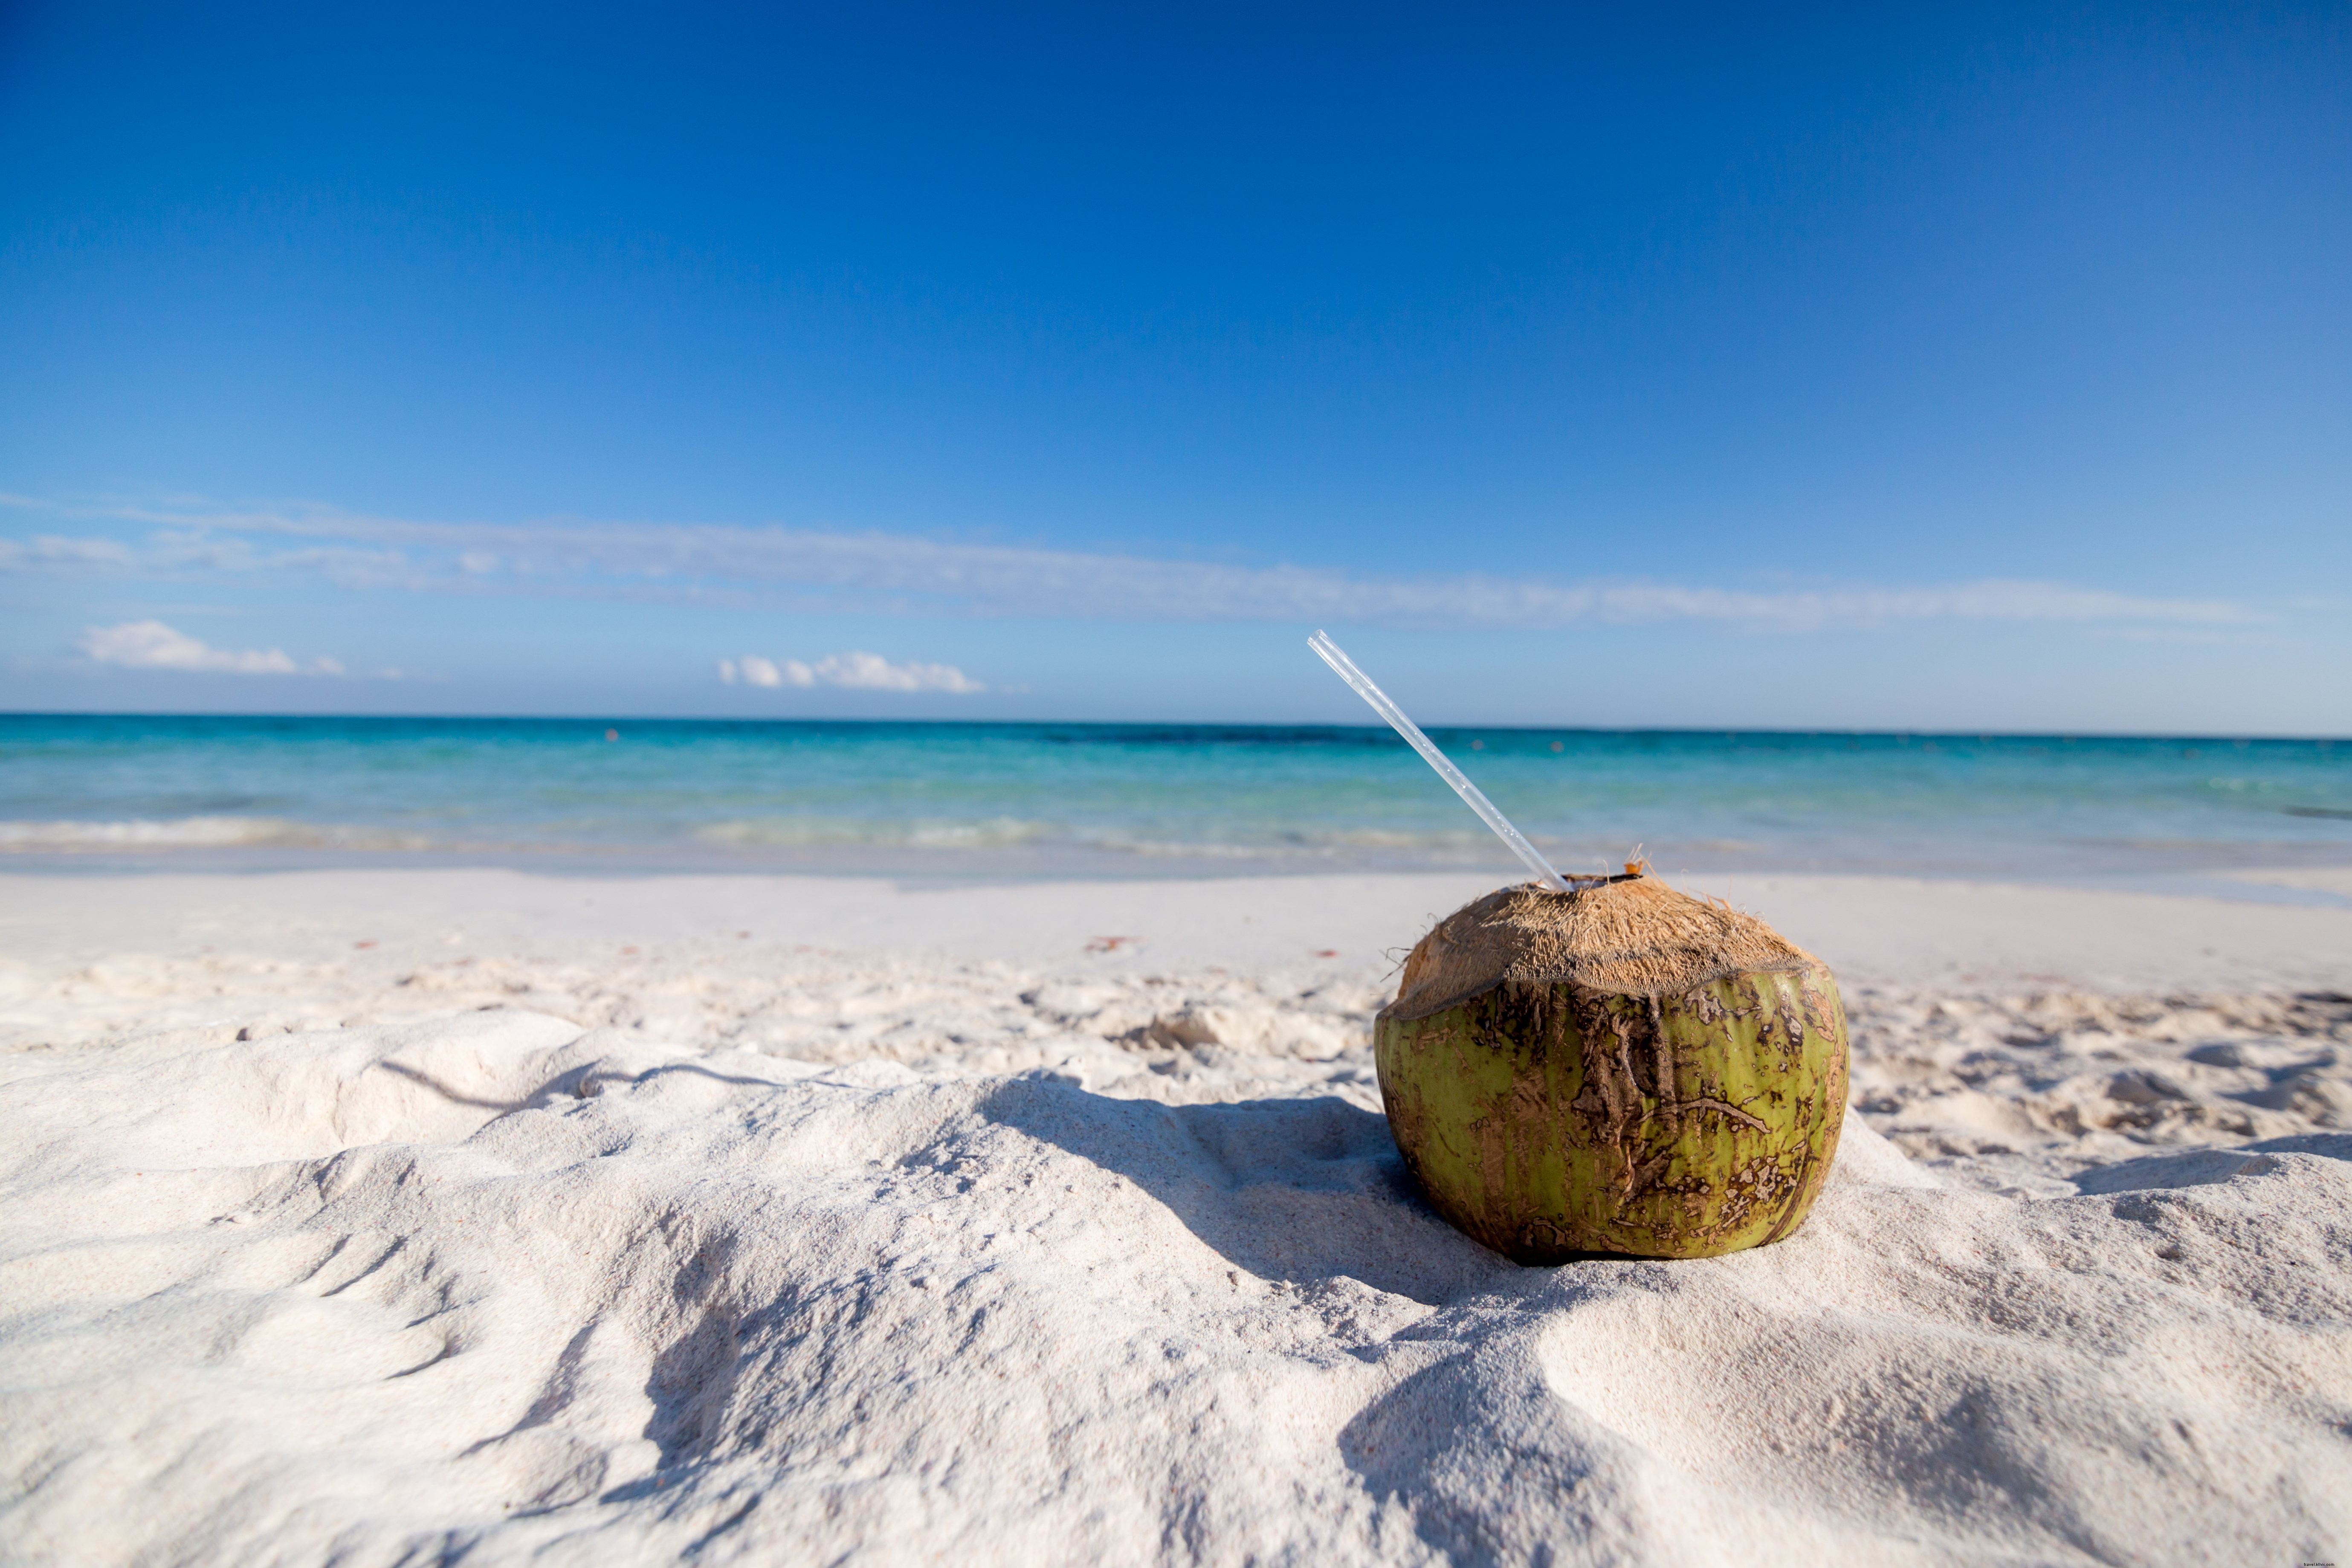 Foto de bebida de coco na praia